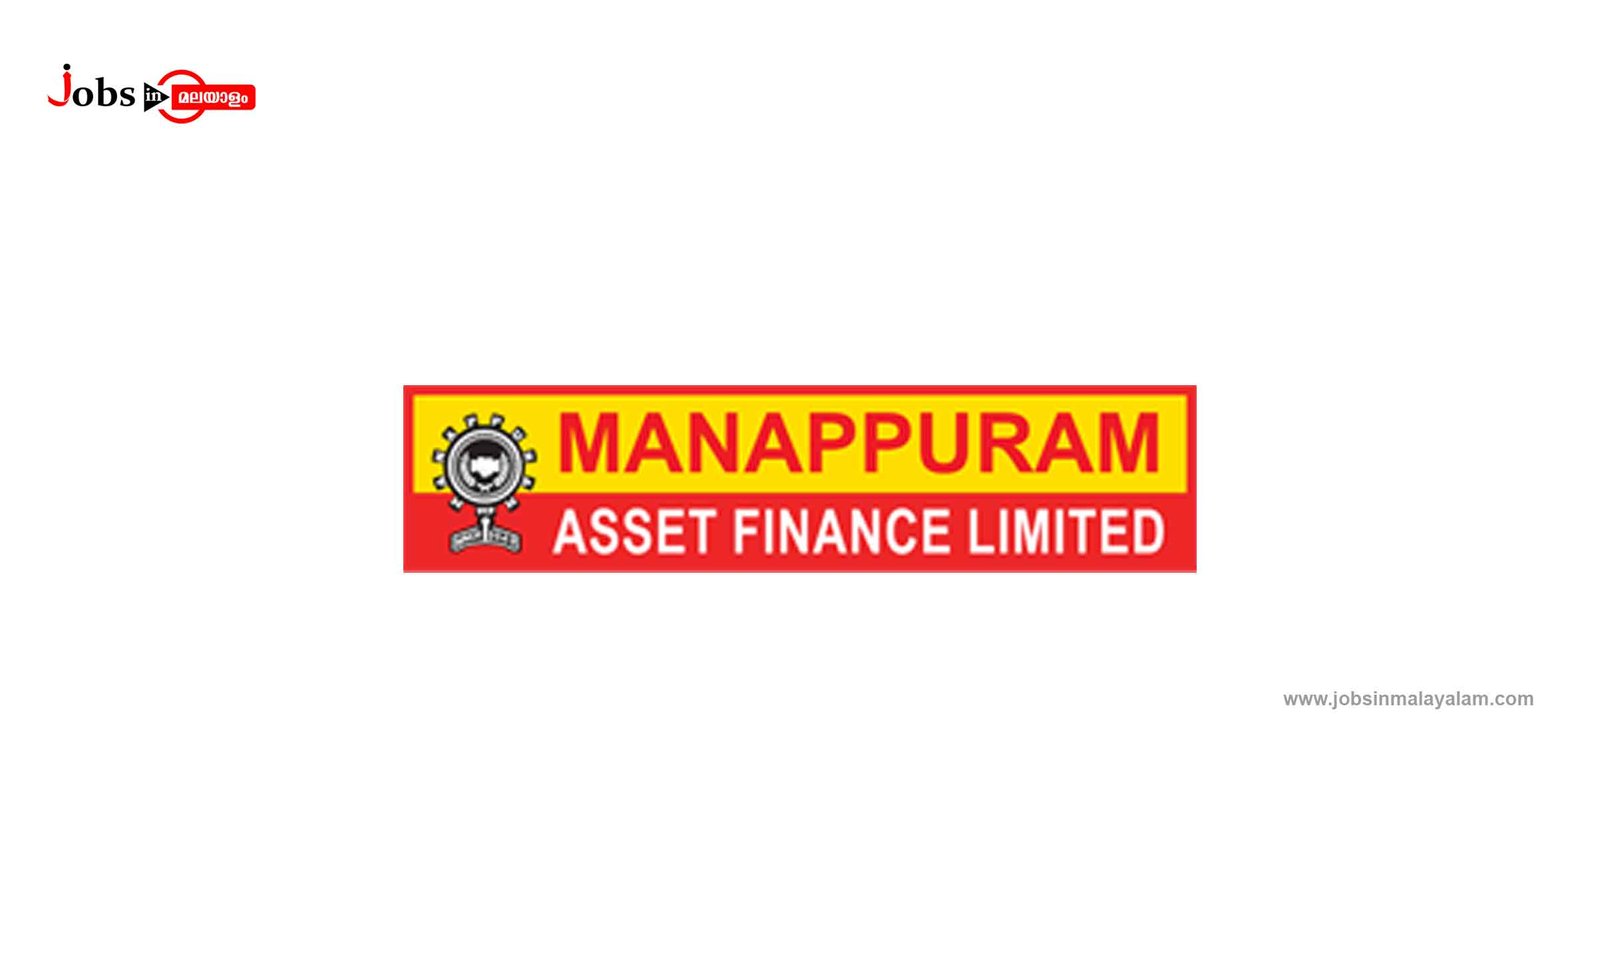 Manappuram Asset Finance